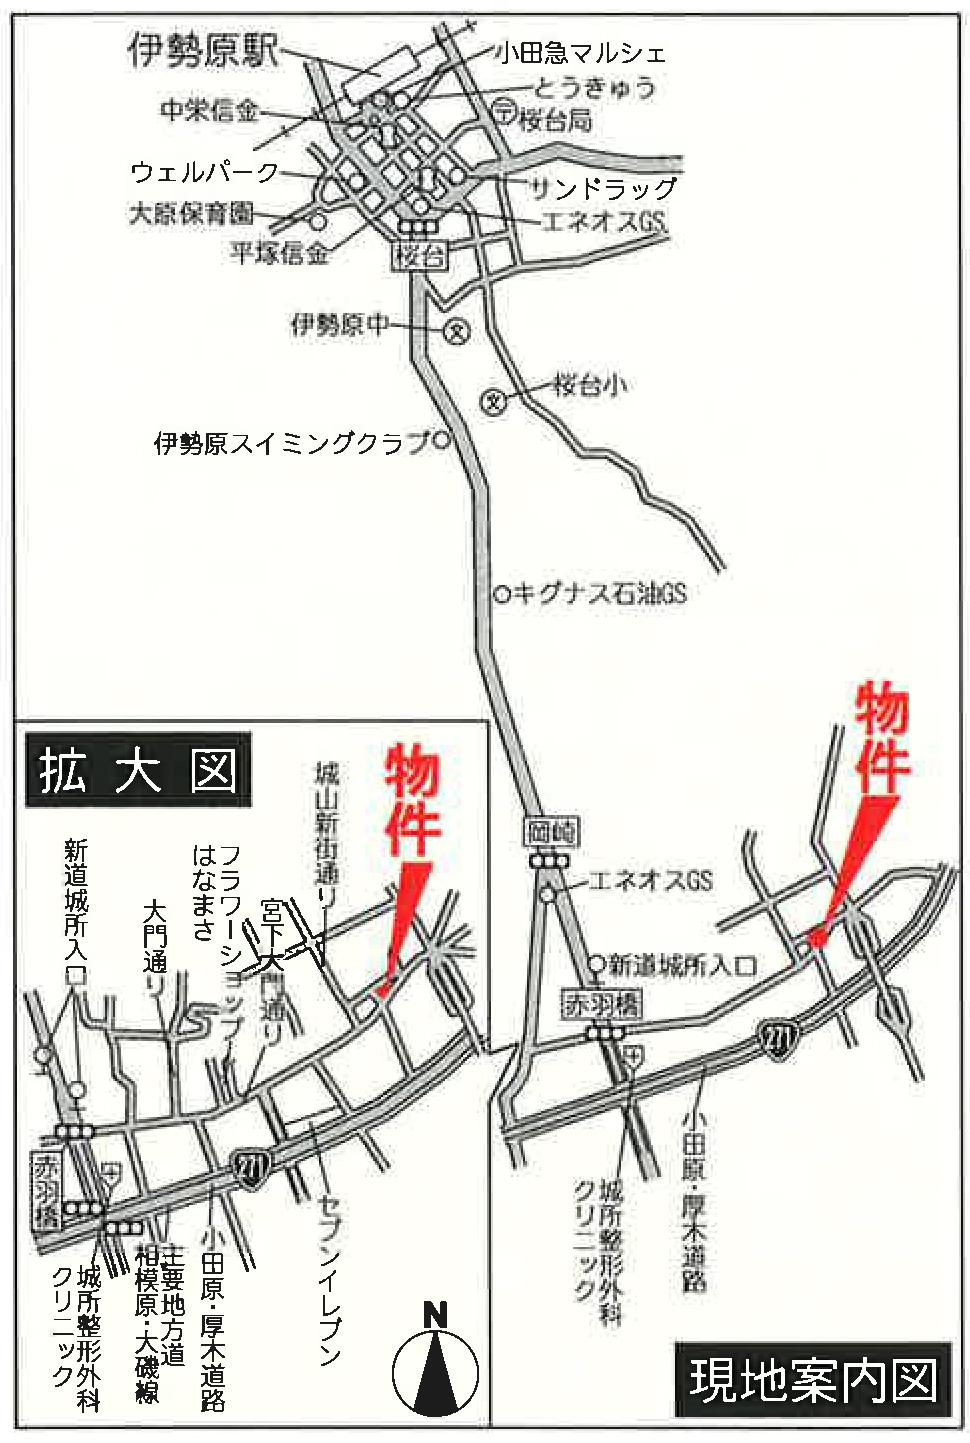 Local guide map. Hiratsuka Kidokoro 468 No. 1